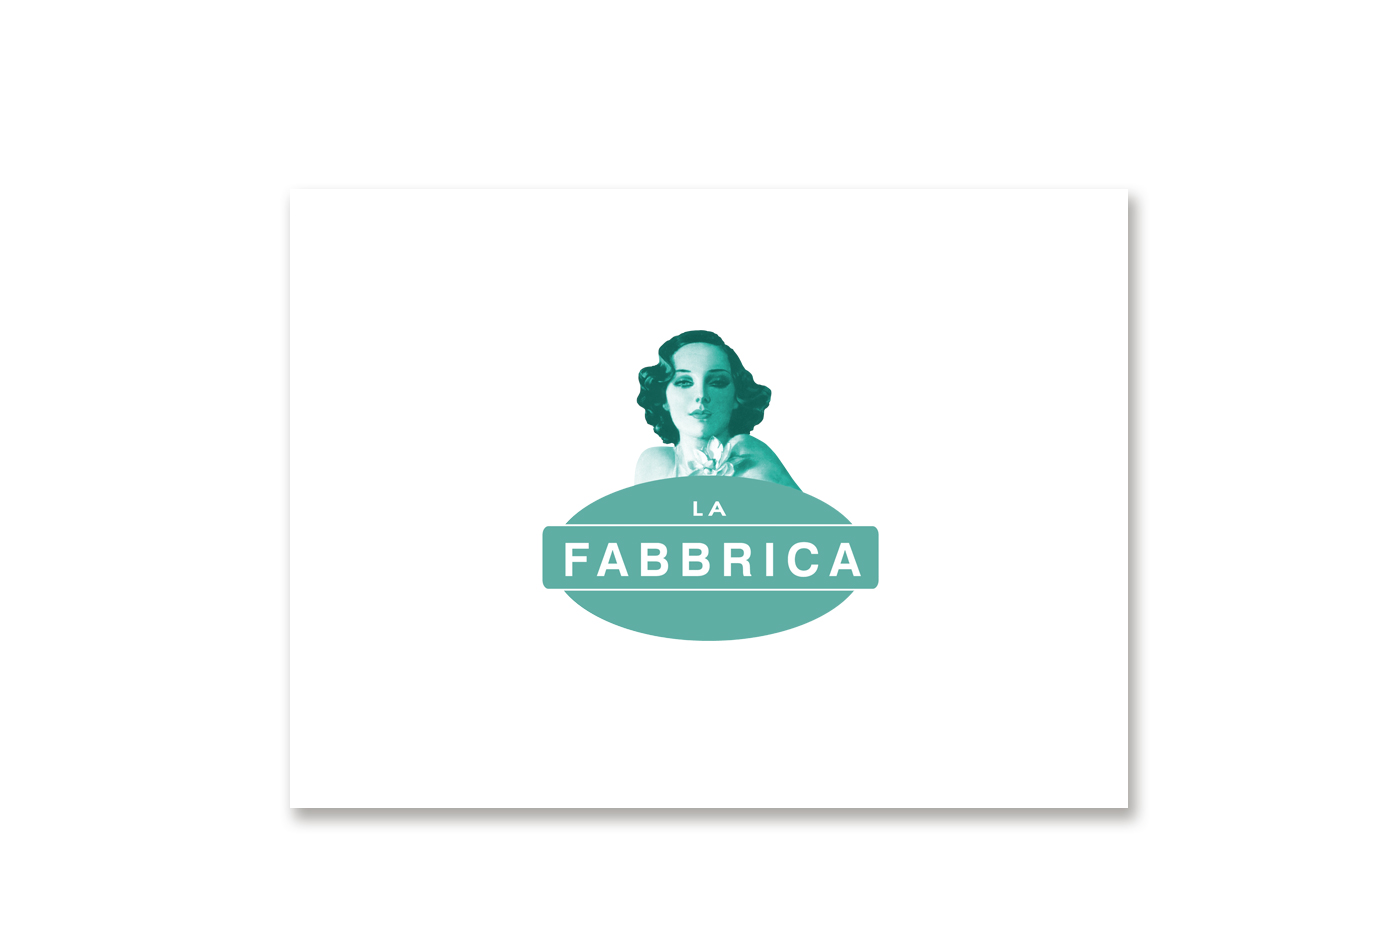 Fabbrica-logo.jpg